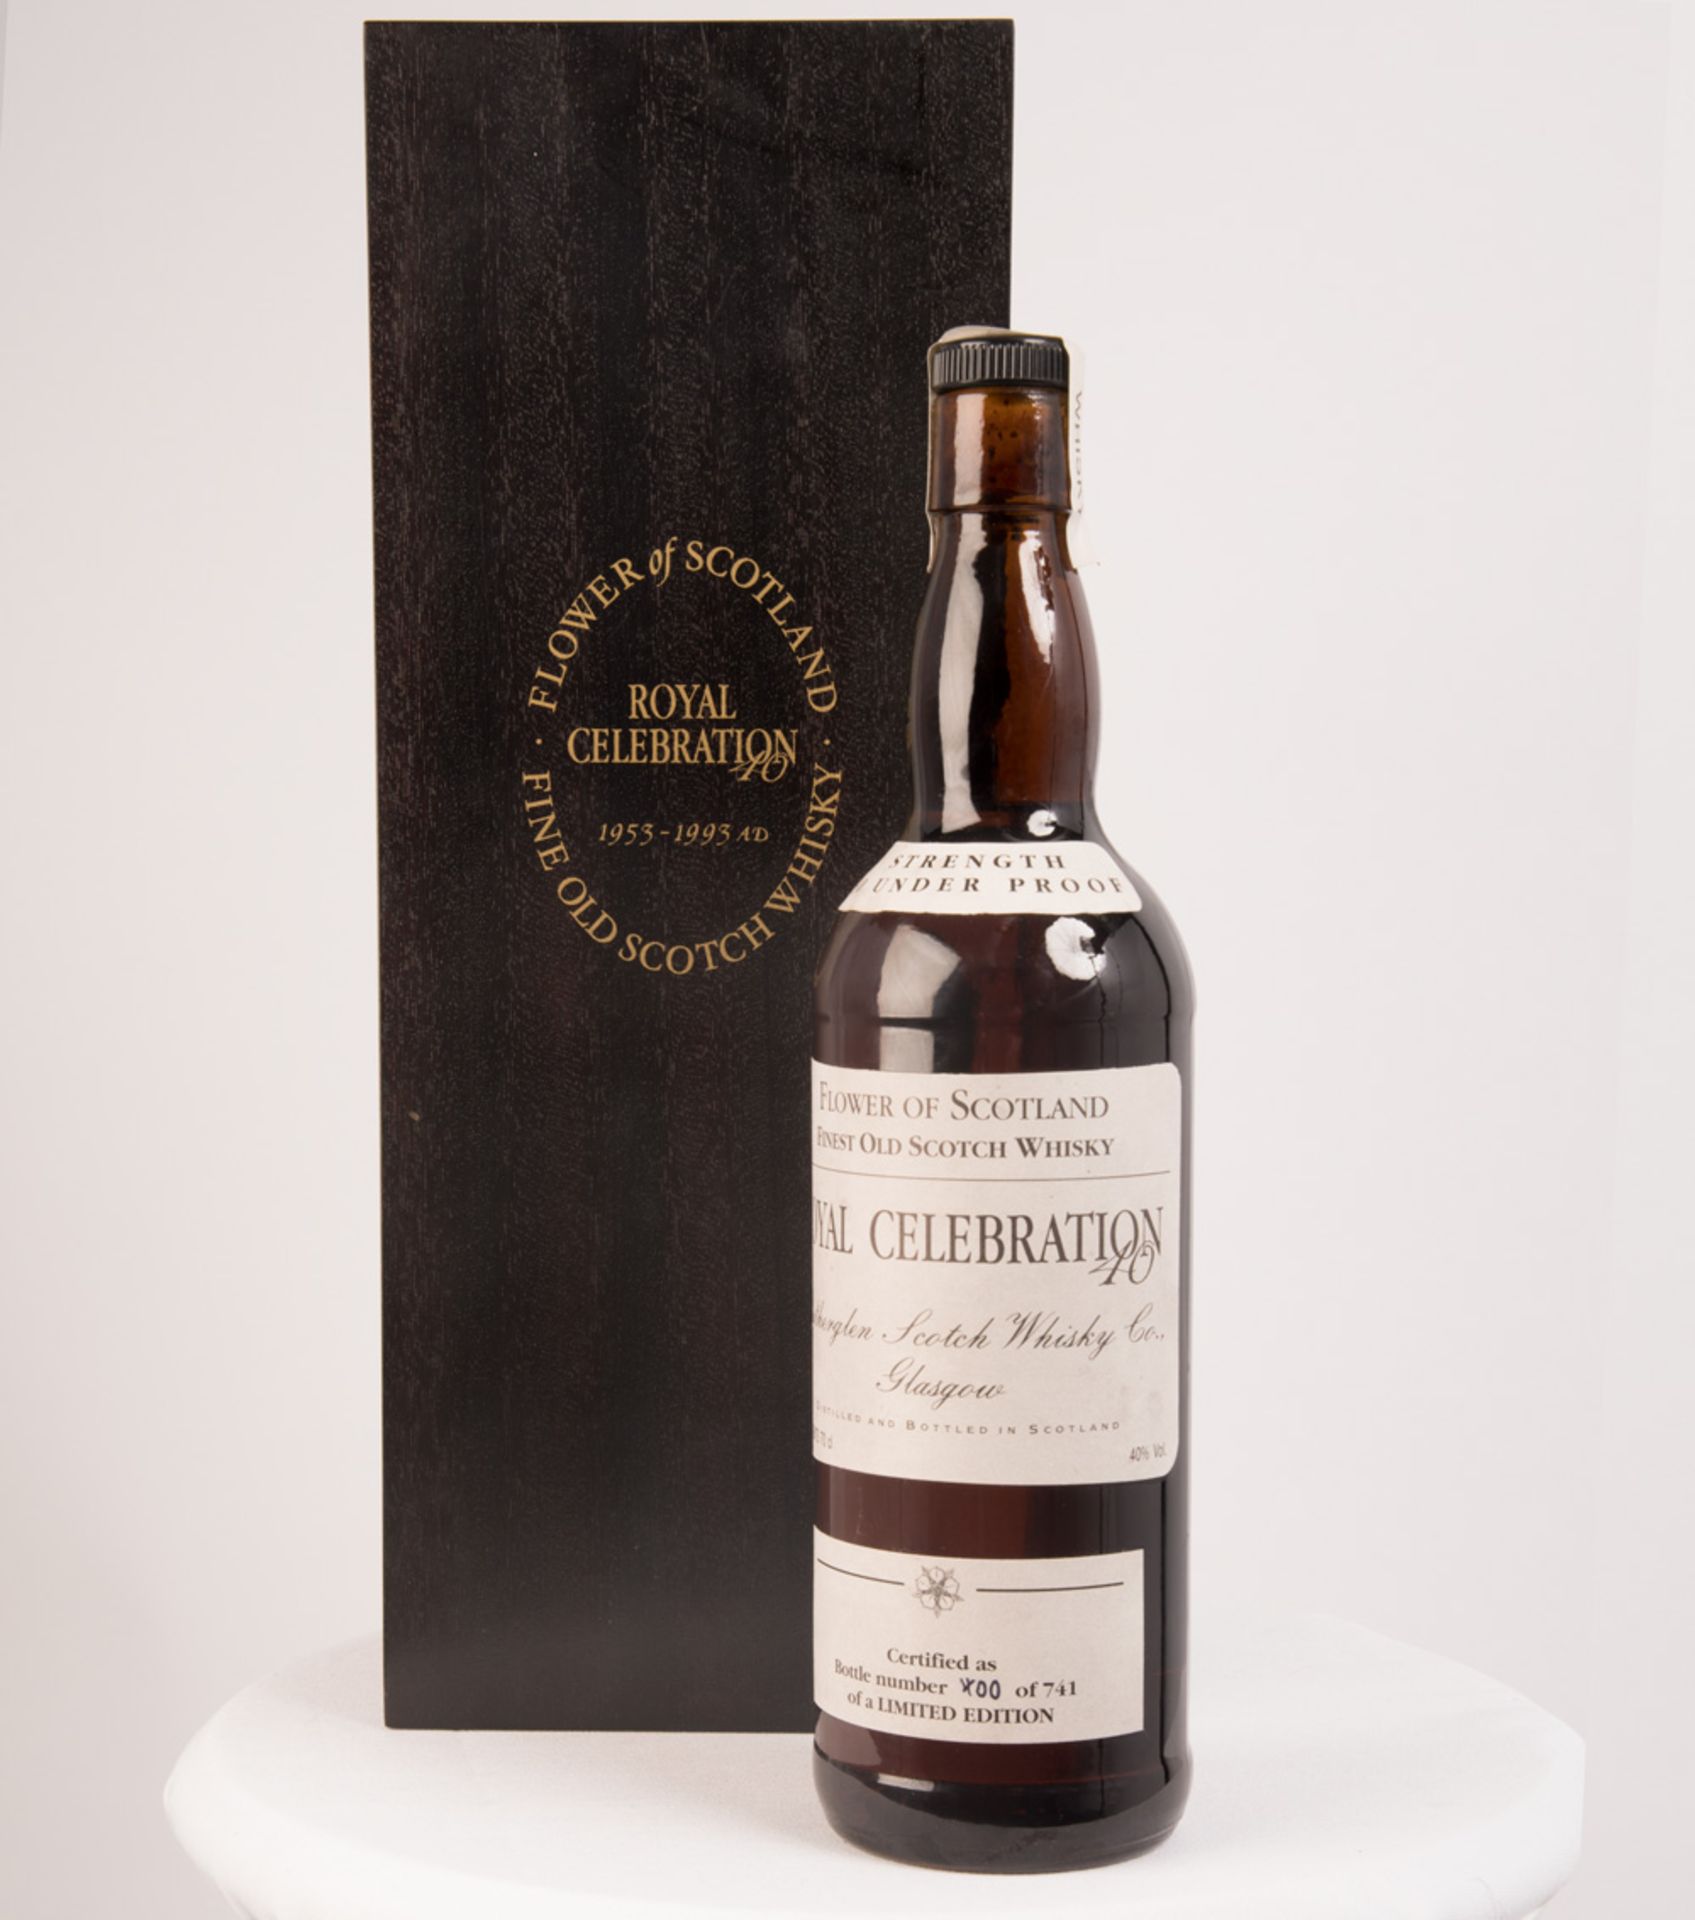 FLOWER OF SCOTLAND ROYAL CELEBRATION 40 Bottled by Rutherglen Scotch Whisky Co. Limited edition,